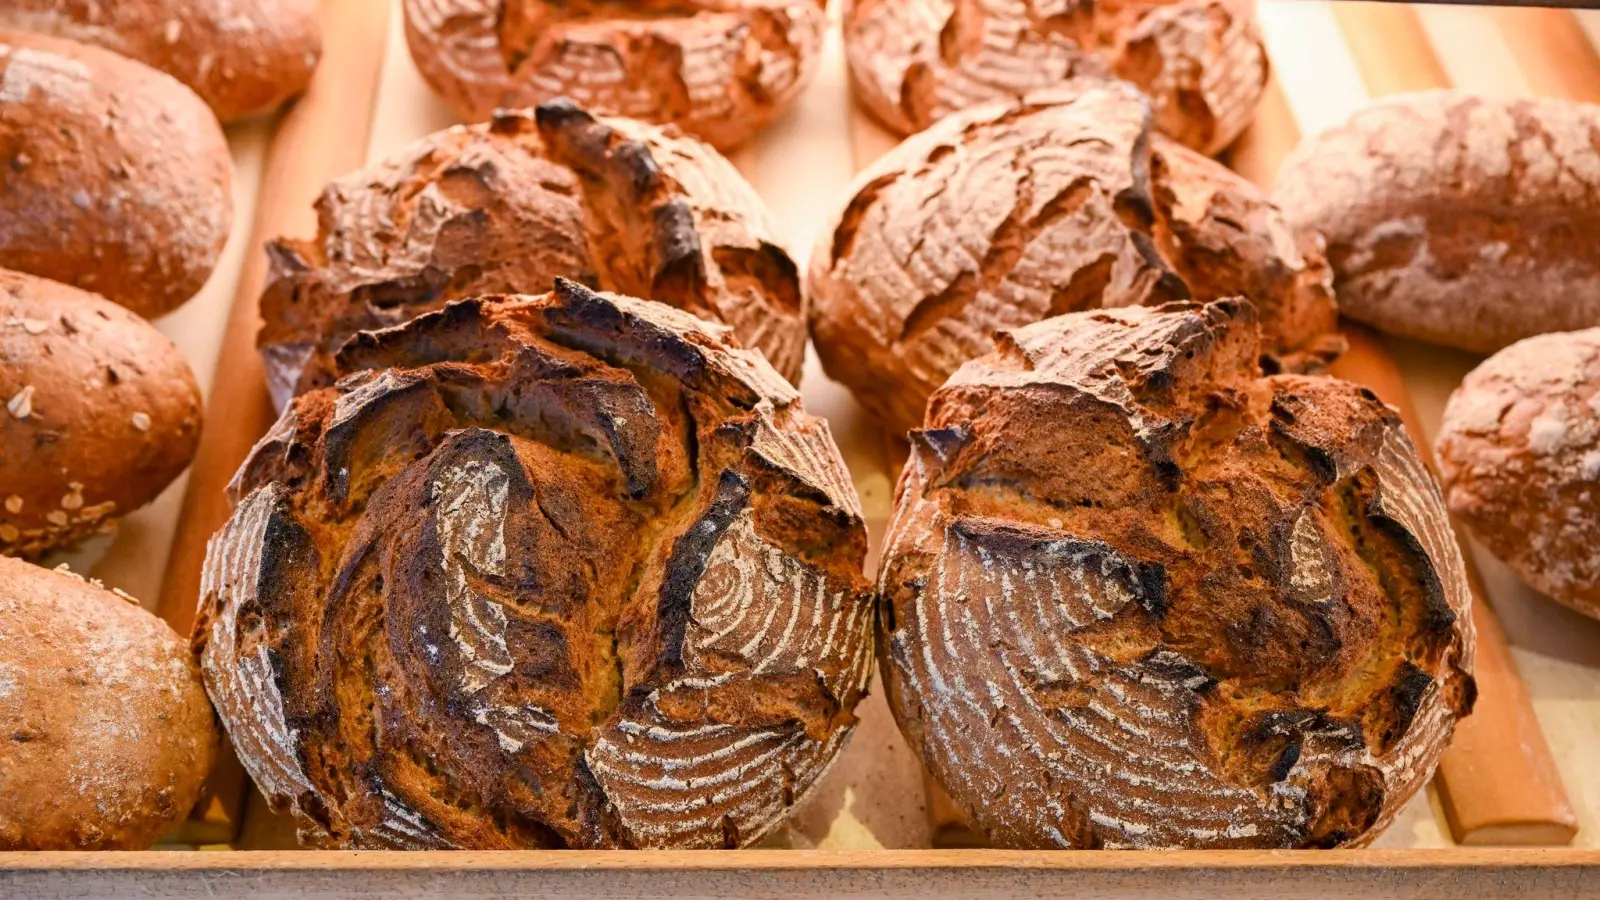 Vier Bäcker aus der Region tauchen in der Liste von „Der Feinschmecker” auf. Besonders gelobt wurde oft das Brot. (Foto: Jens Kalaene/dpa/dpa-tmn)